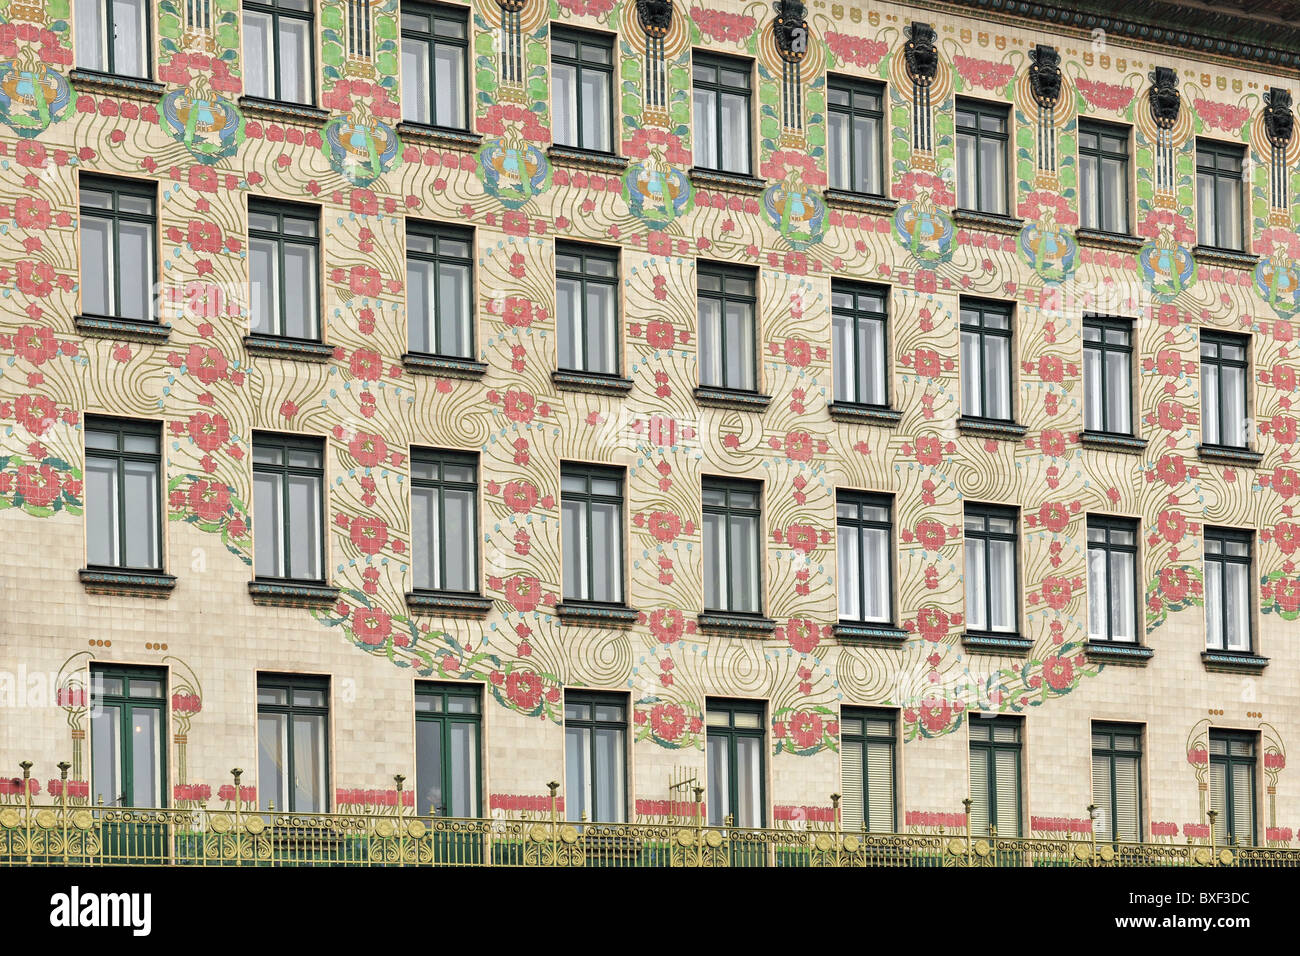 VIENNA Austria appartamento Majolikahaus facciata di edificio 1899 dalla moderna architetto Otto Wagner nei pressi di Vienna Naschmarket Foto Stock